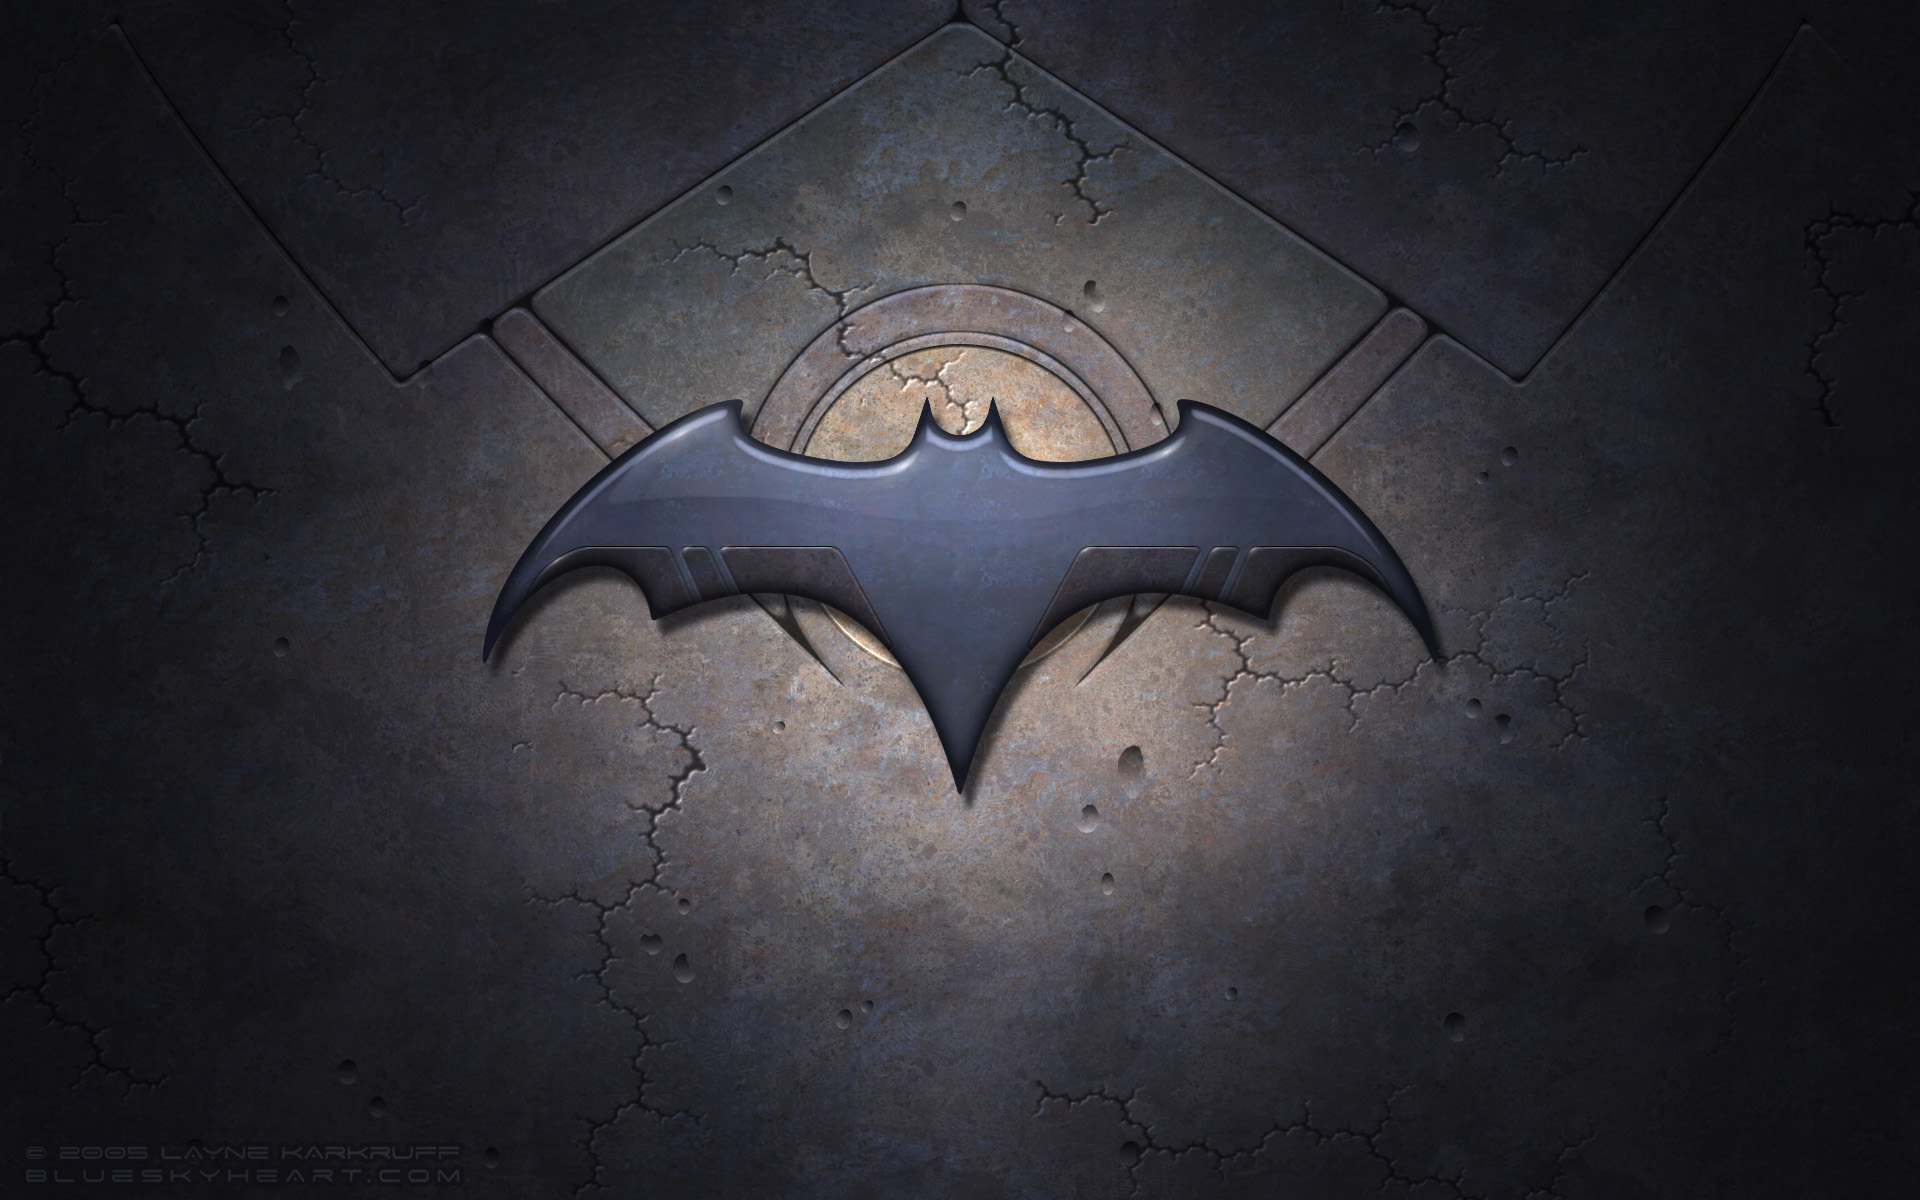 batman, Dc, Comics, Batman, Logo Wallpaper